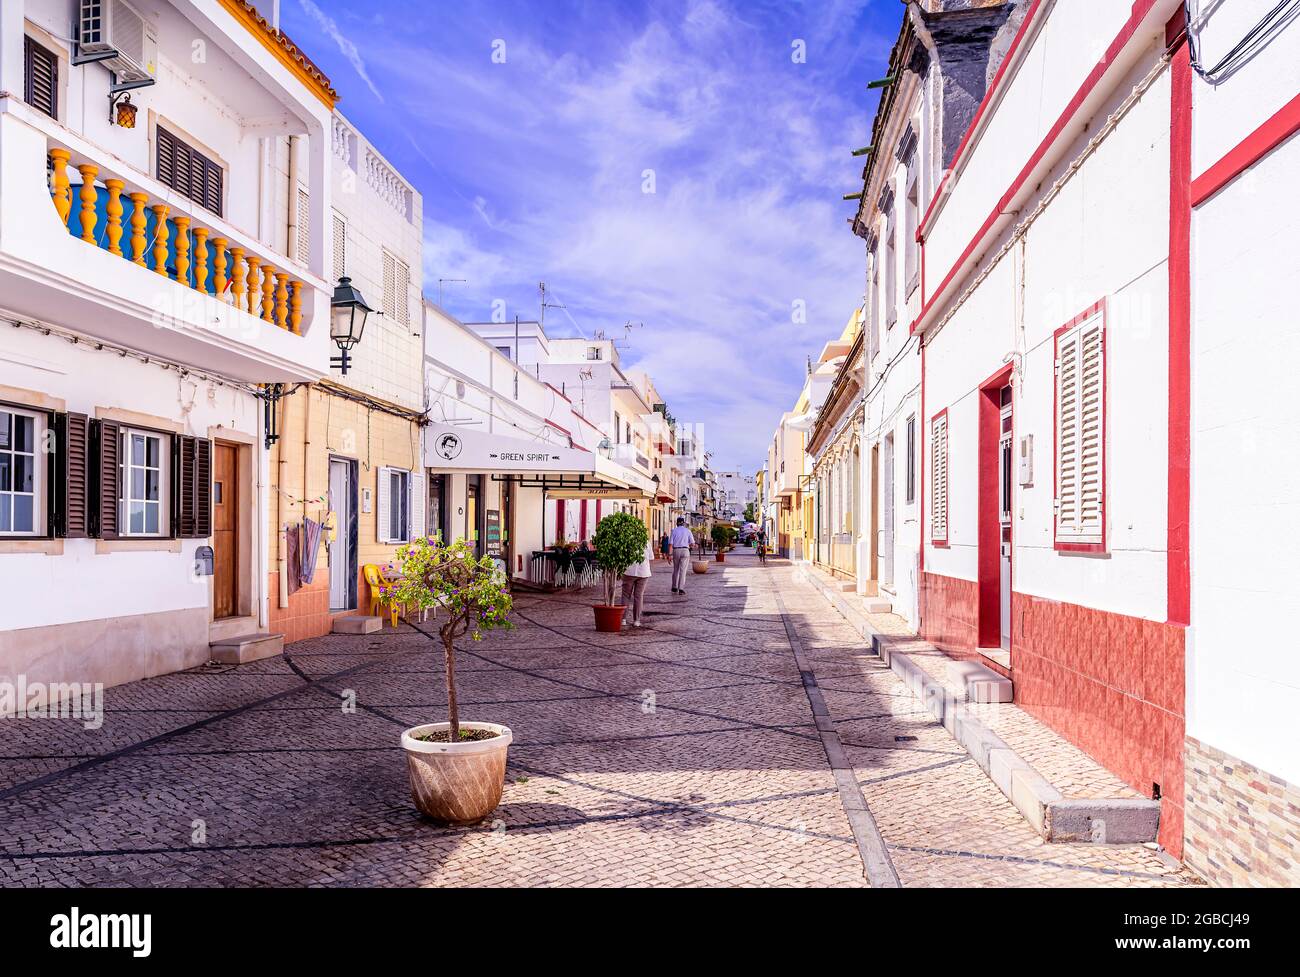 Rue pavée typique portugaise en pierre de galets, calcada portuguesa pavés portugais. Fuseta est Algarve Portugal Banque D'Images